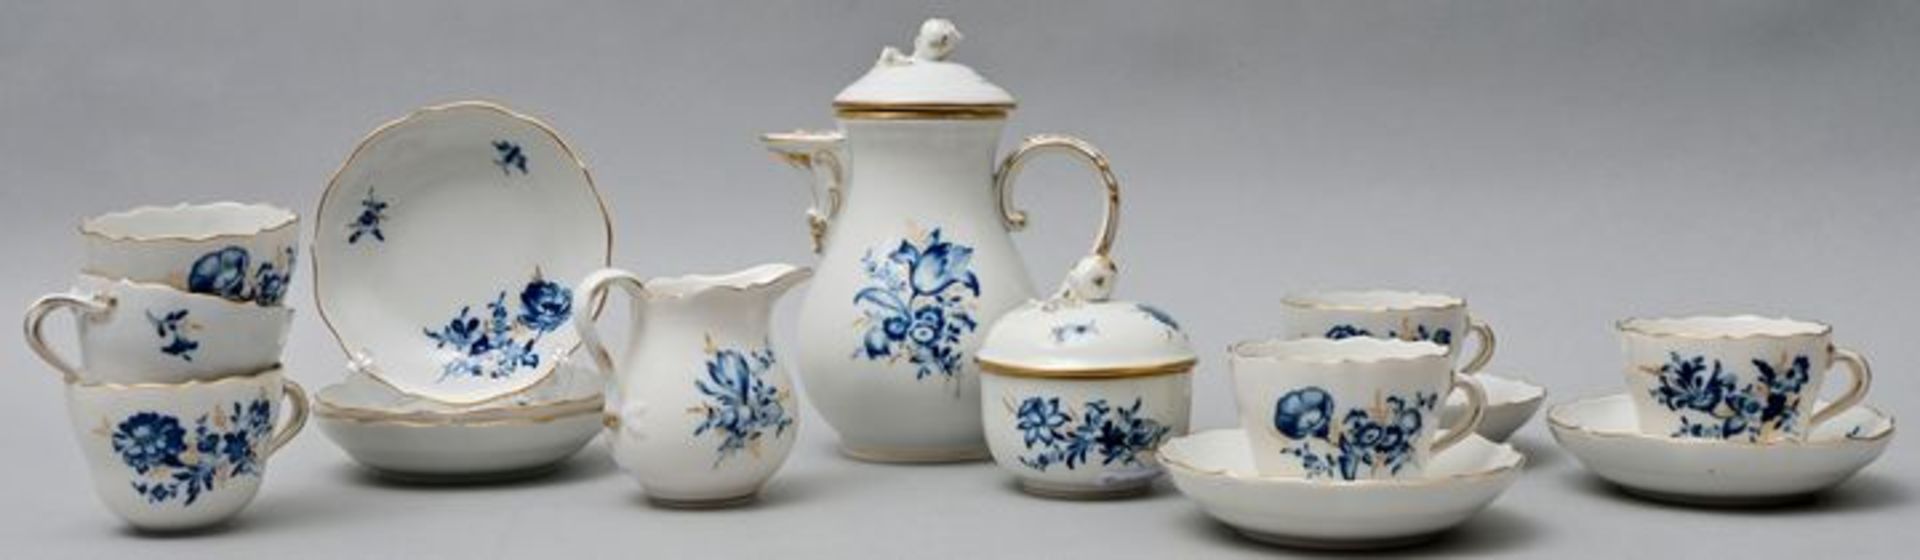 Blaue Blume mit Goldgräsern/ porcelain mocha service